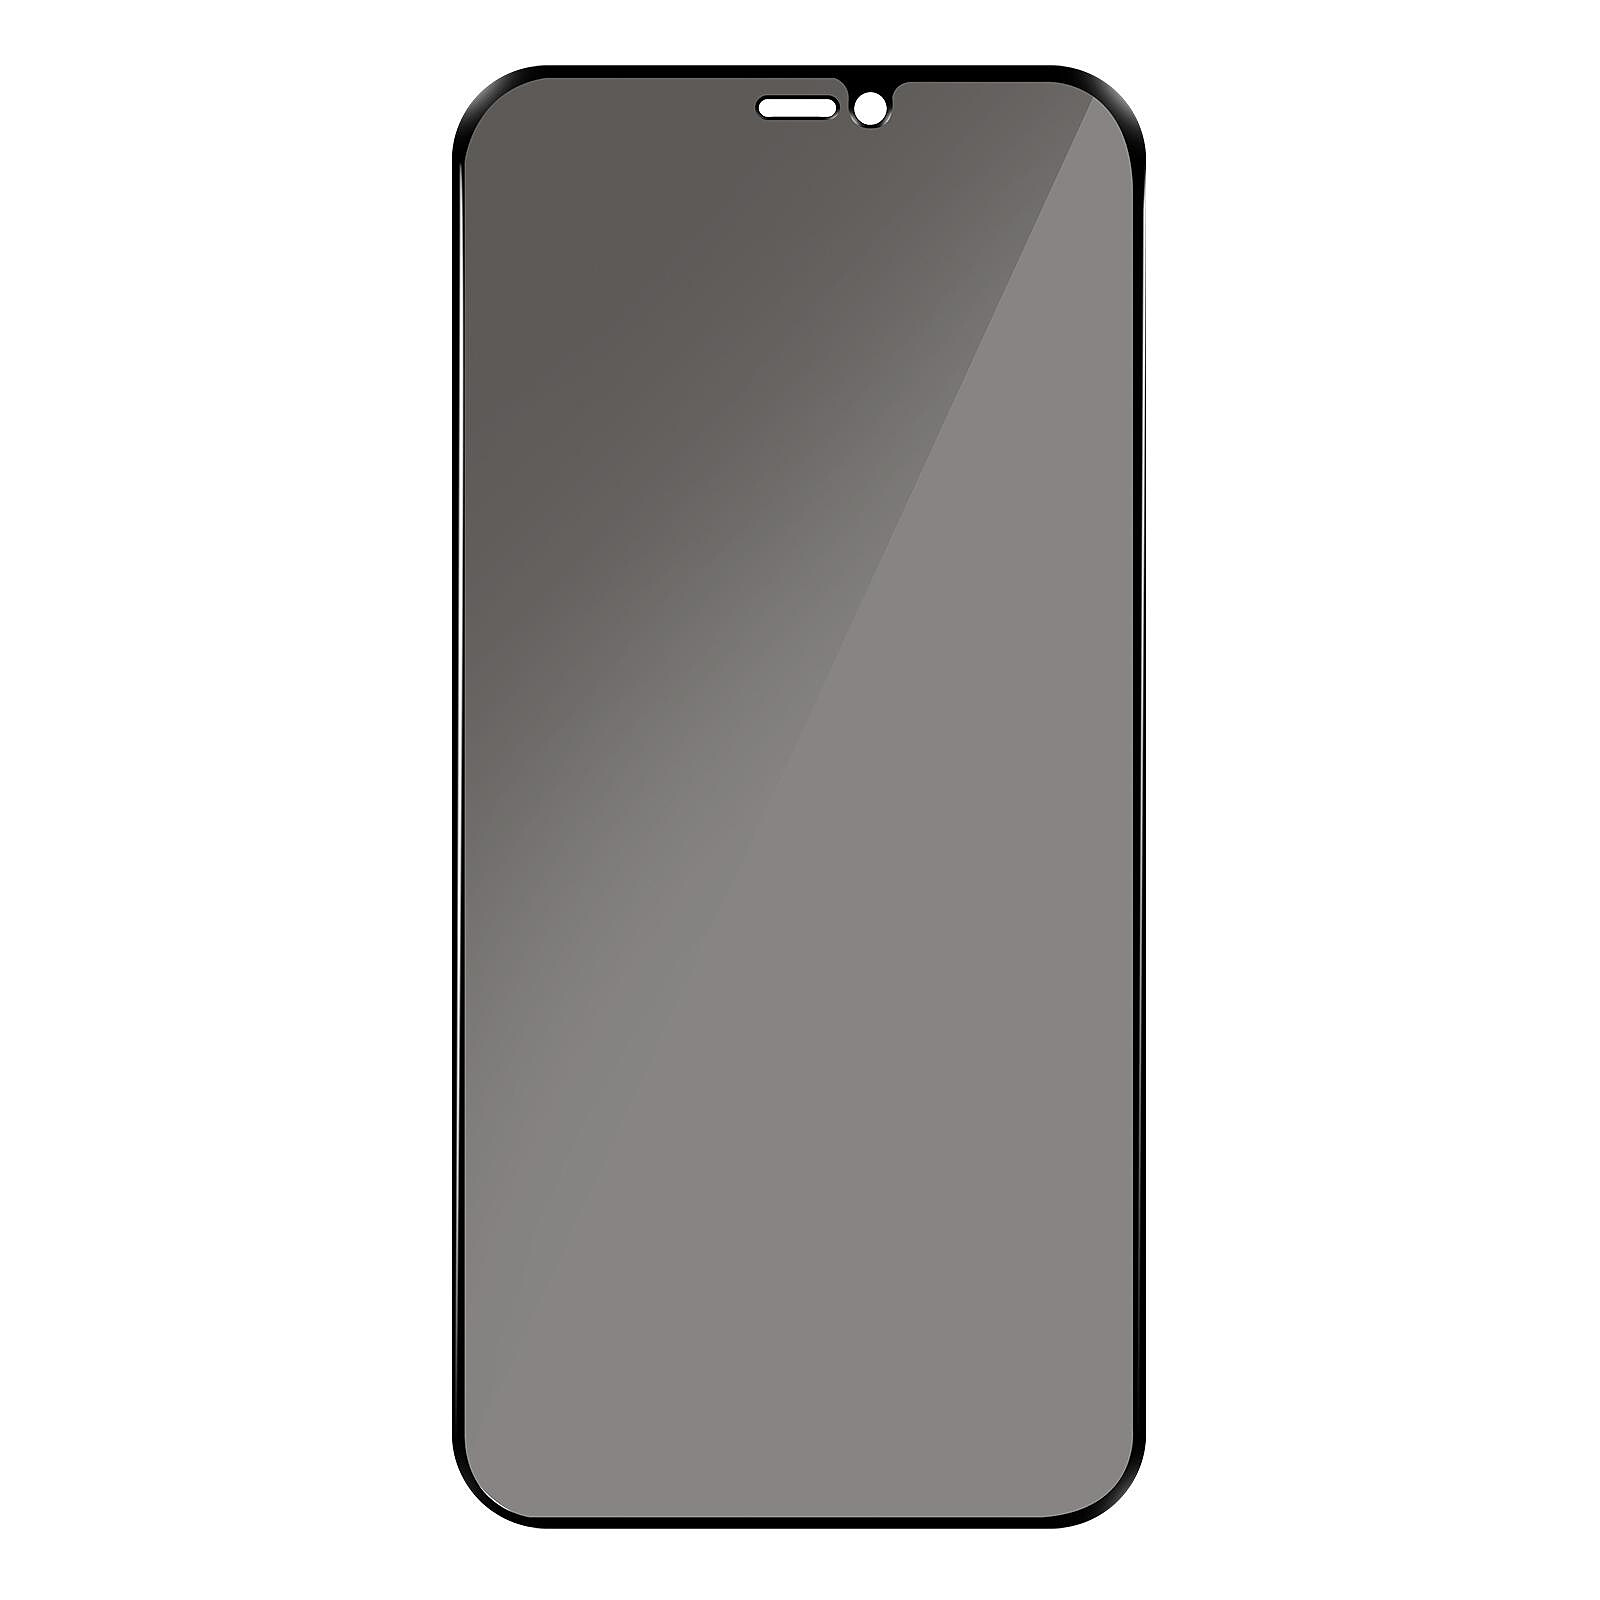 Verre de protection Full-Screen 3D pour Apple iPhone 12 mini, noir